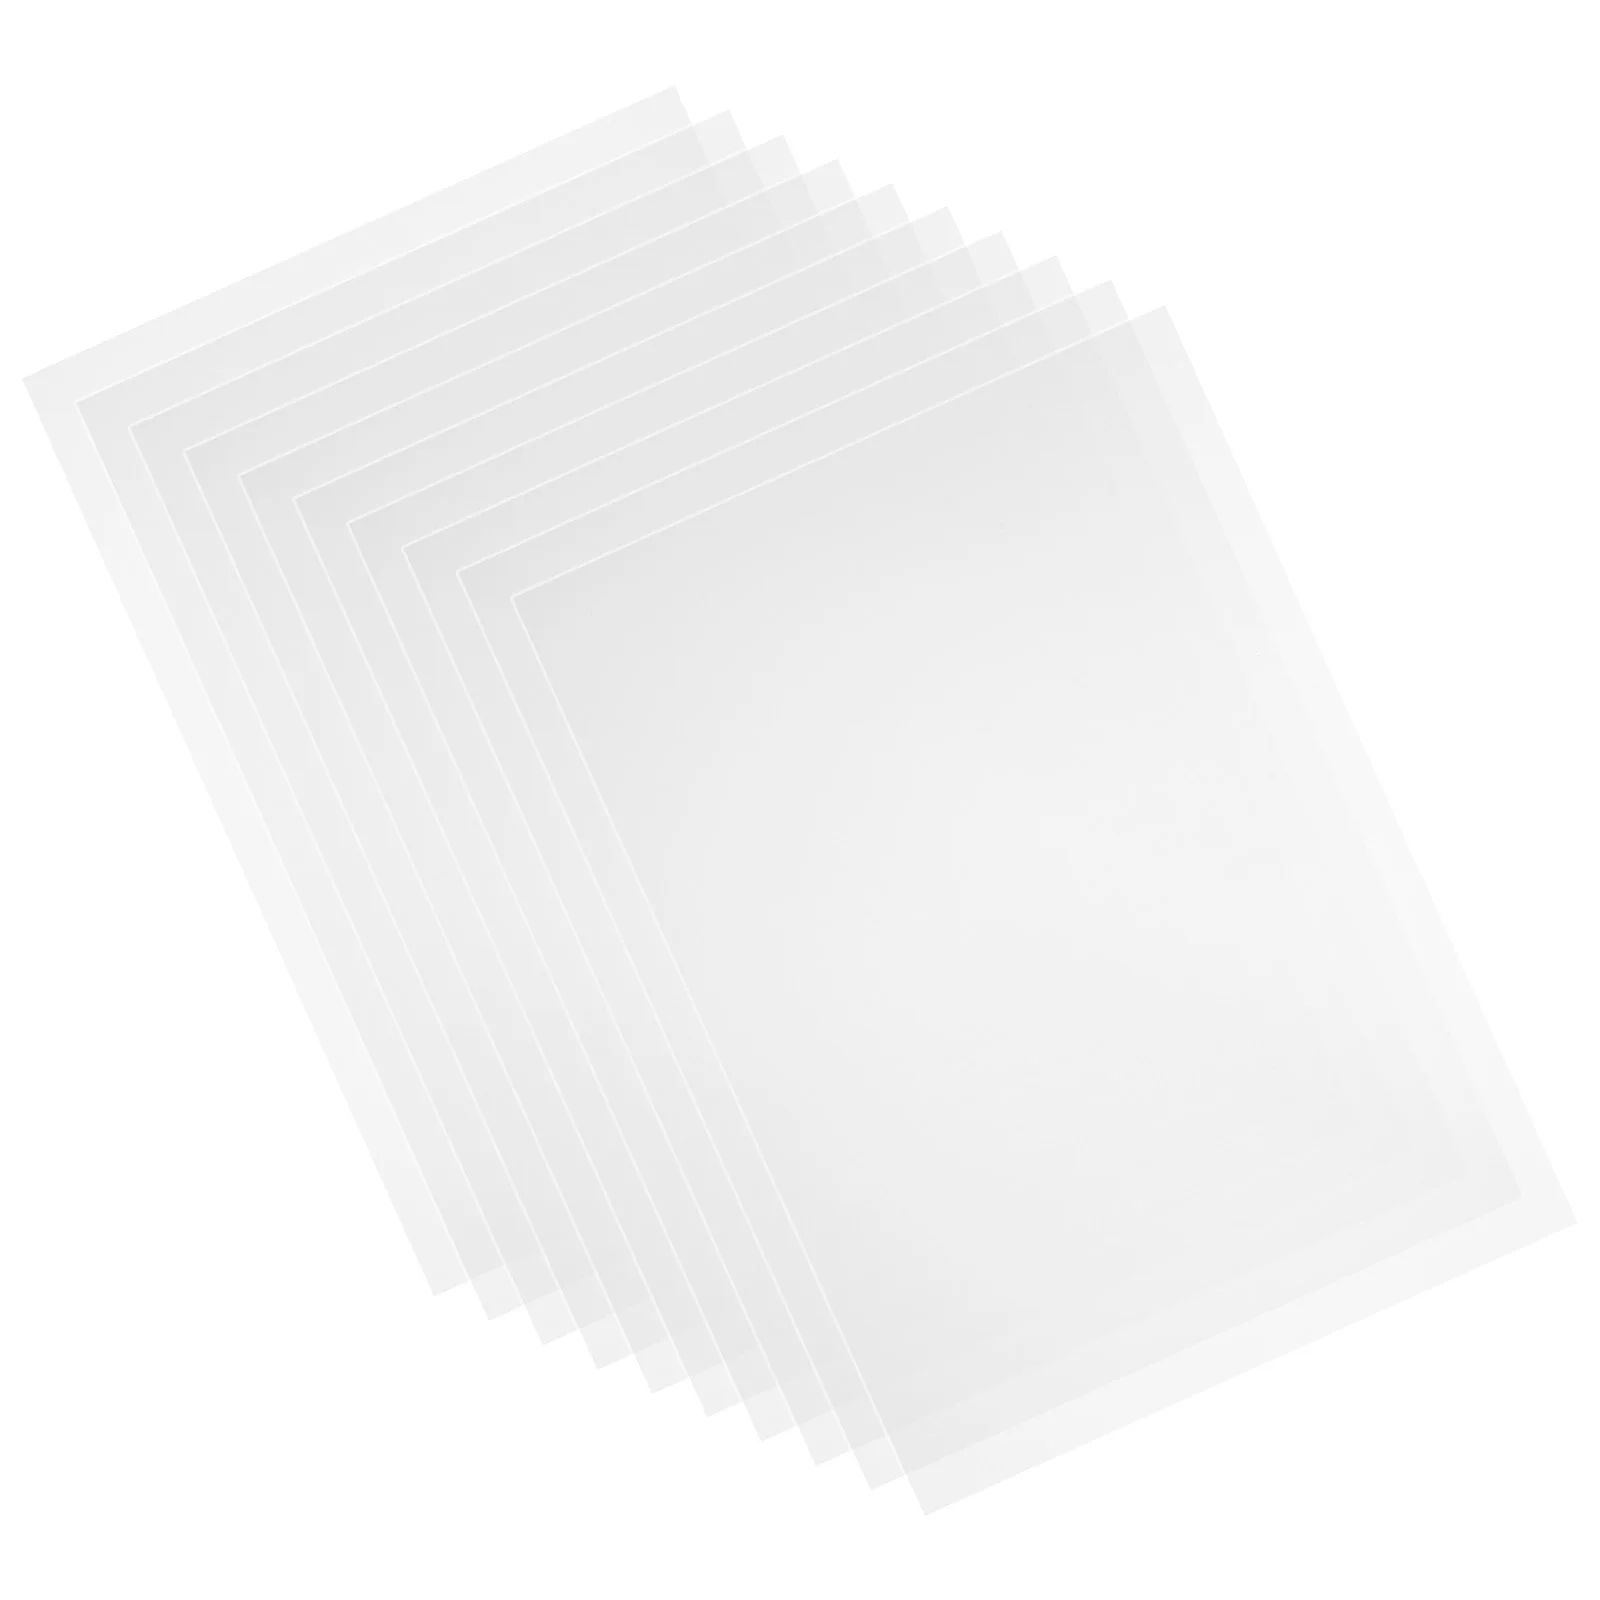 

10pcs Baffle Sheets Multipurpose Sheets High Toughness Sheets Crafts Protective Sheets